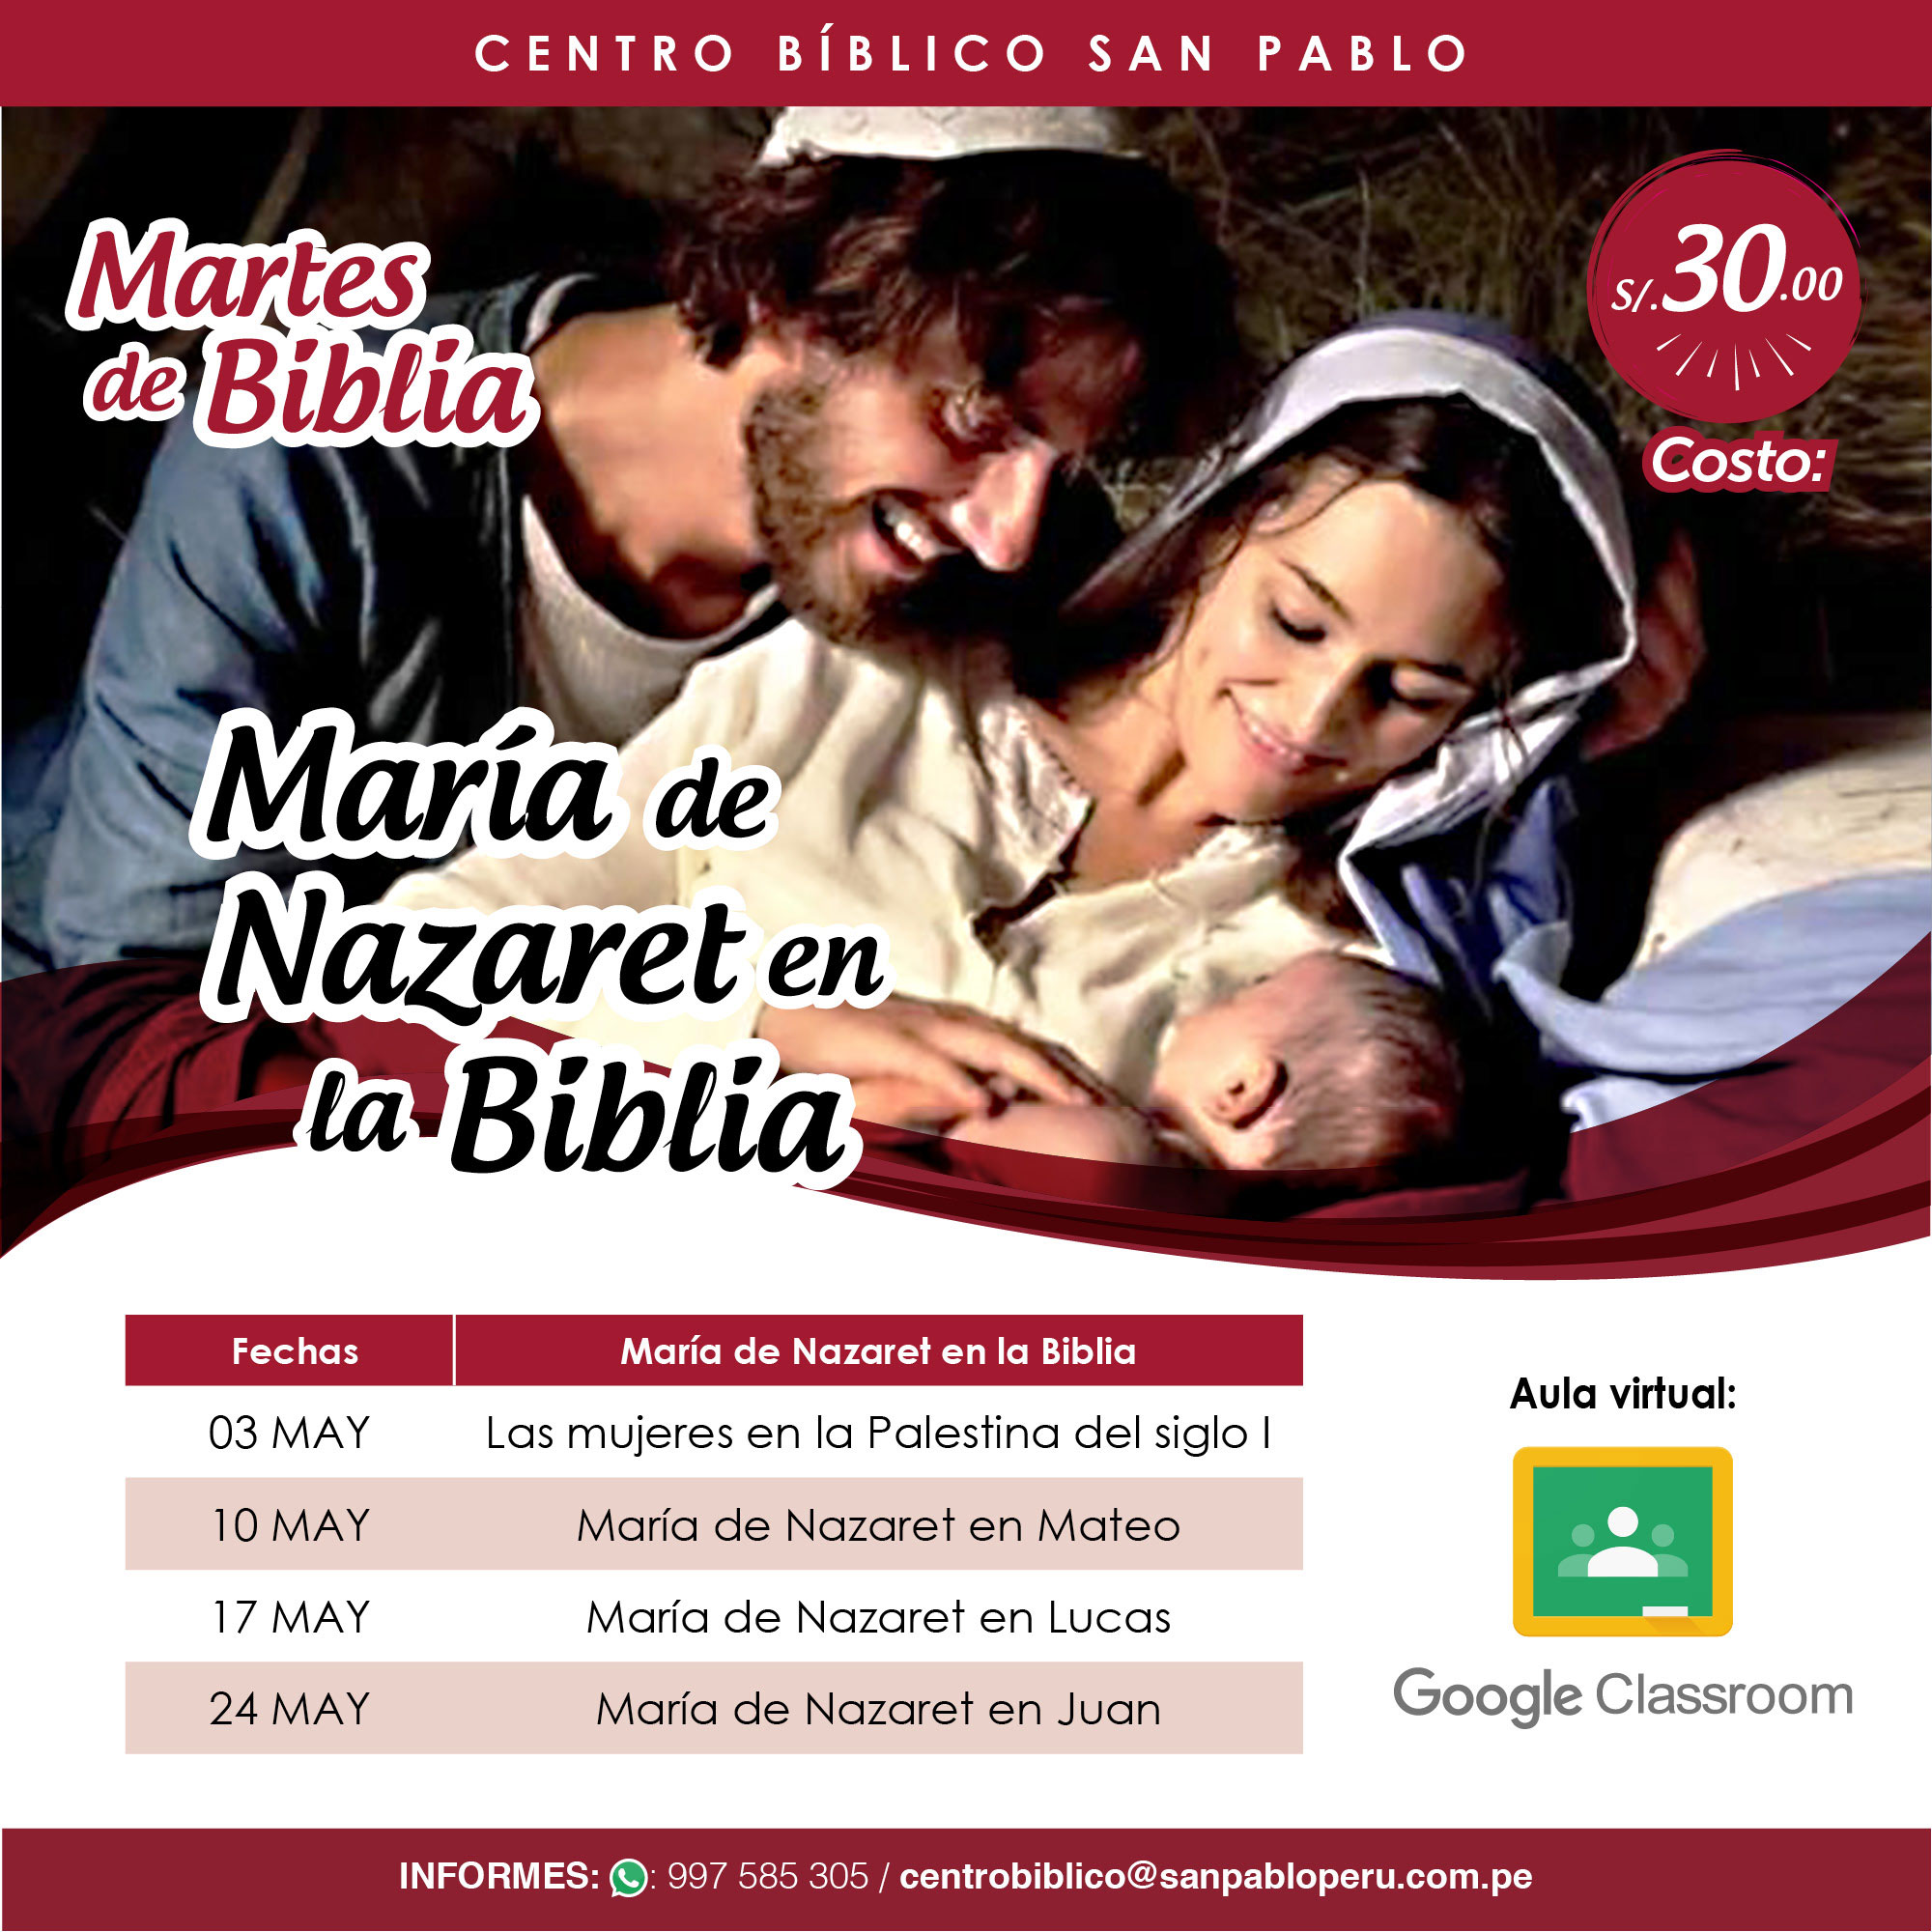 Martes de Biblia: Curso Virtual “María de Nazaret en la Biblia”